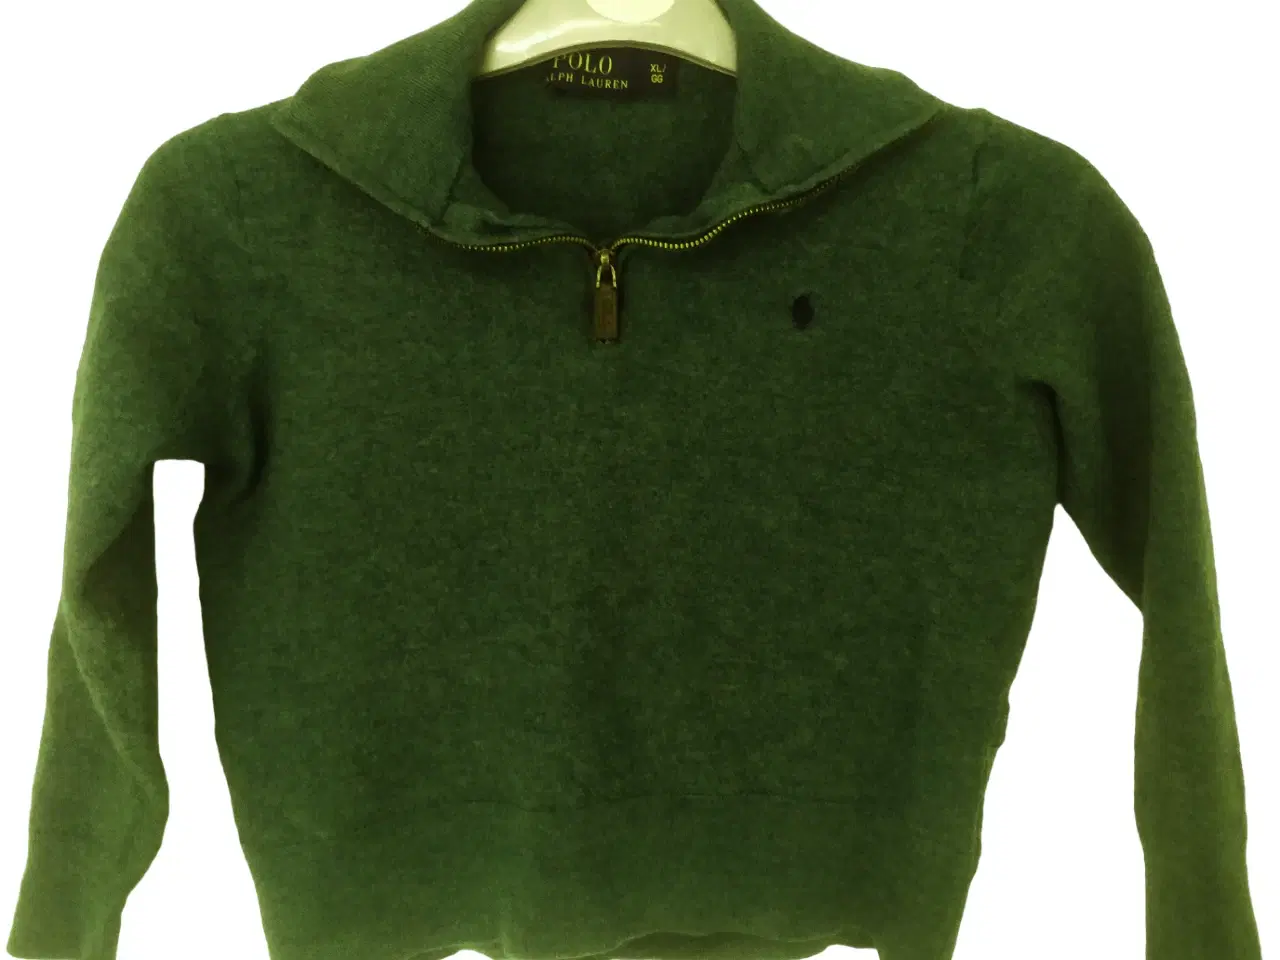 Billede 1 - Ralph Lauren Polo sweater, størrelse - cirka 116